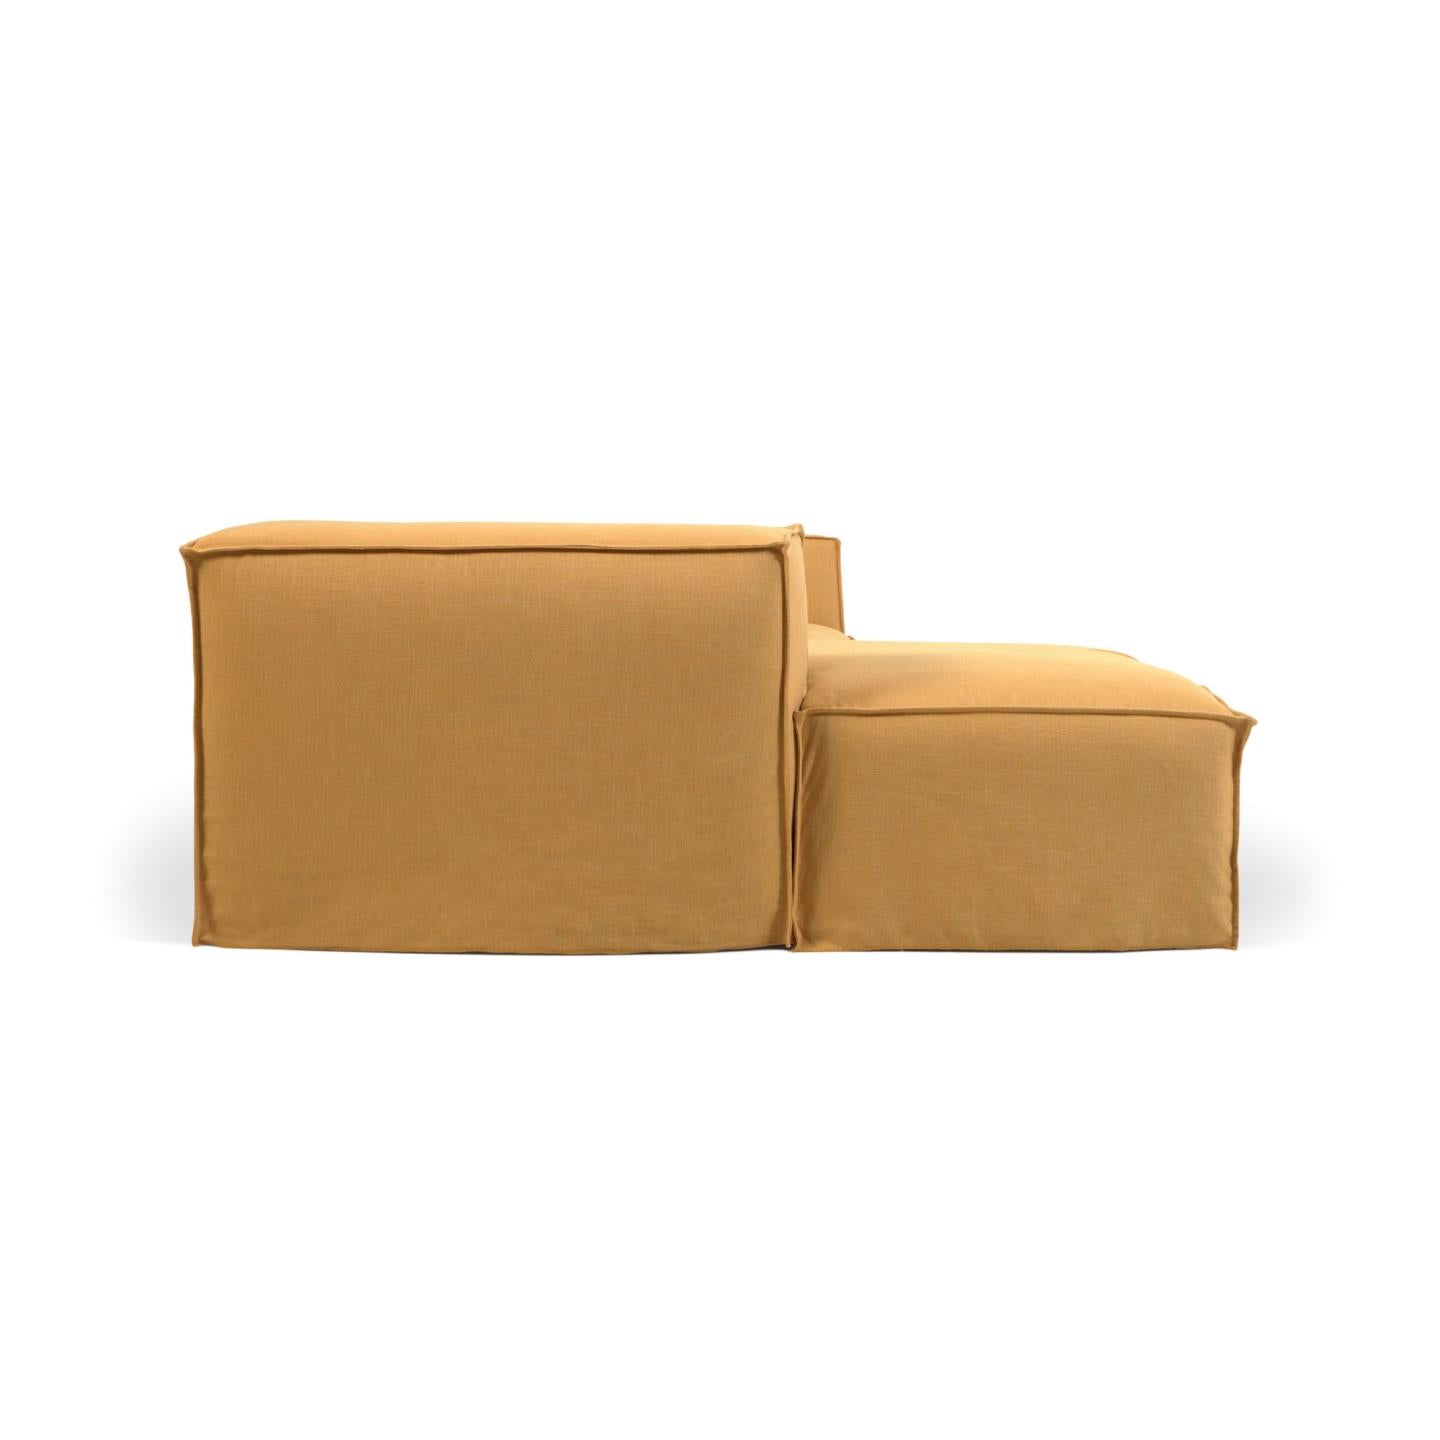 Blok 2 személyes kanapé bal oldali fekvőfotellel és levehető huzattal, mustárszínű vászon, 240 cm